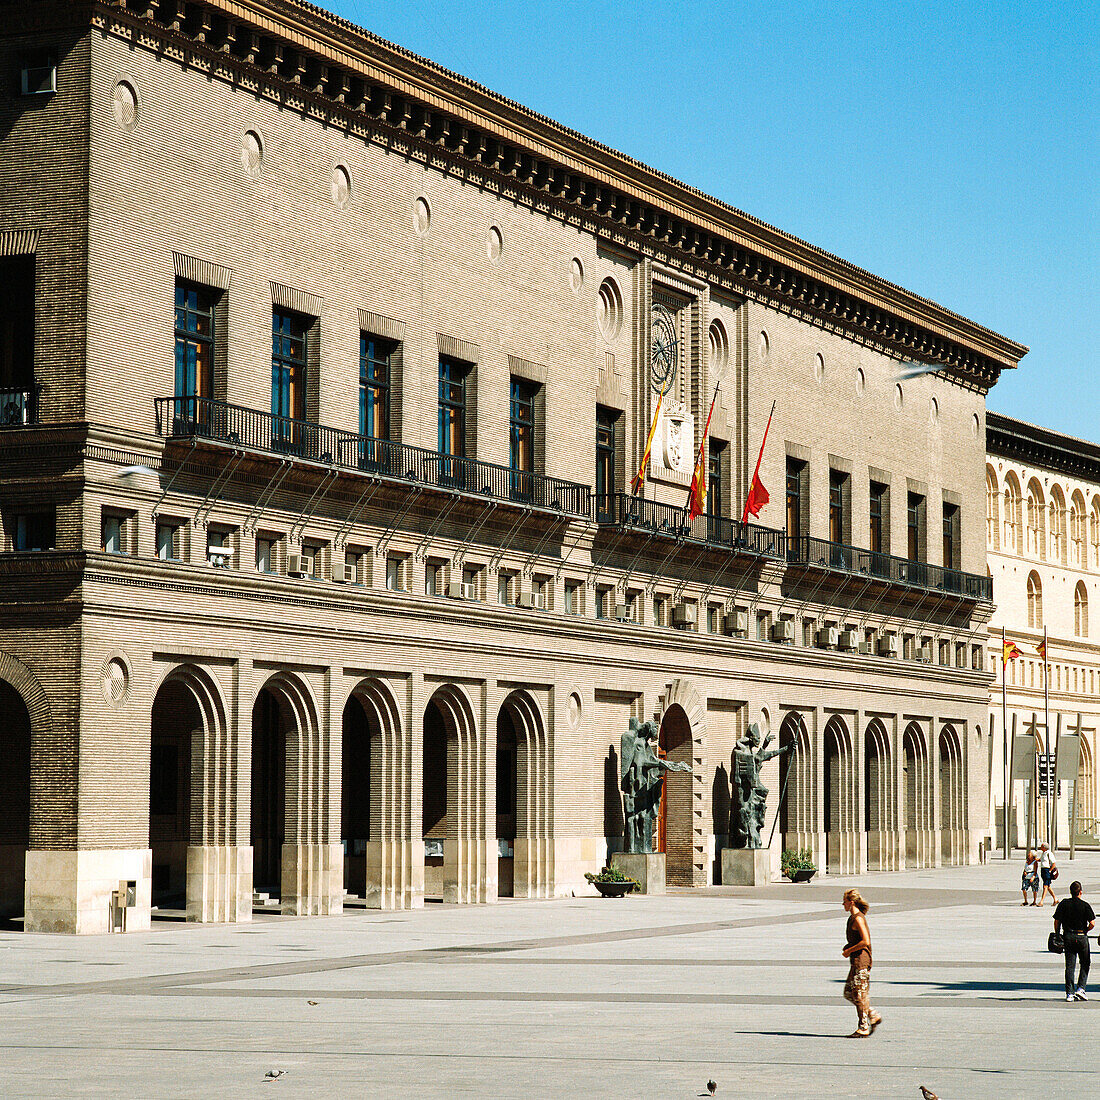 Town Hall in Plaza del Pilar, Zaragoza. Aragón, Spain.